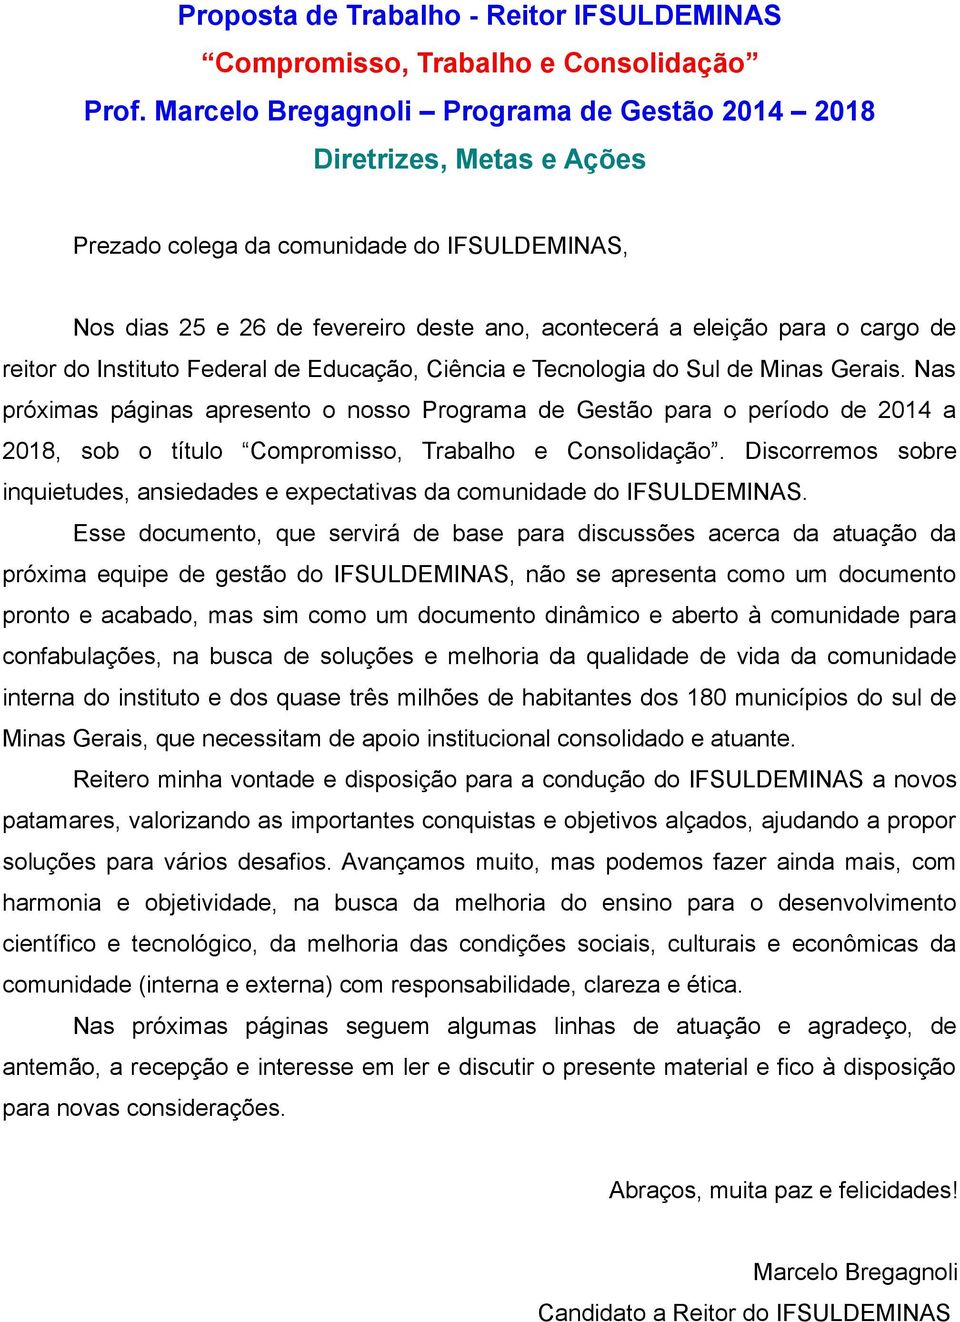 reitor do Instituto Federal de Educação, Ciência e Tecnologia do Sul de Minas Gerais.